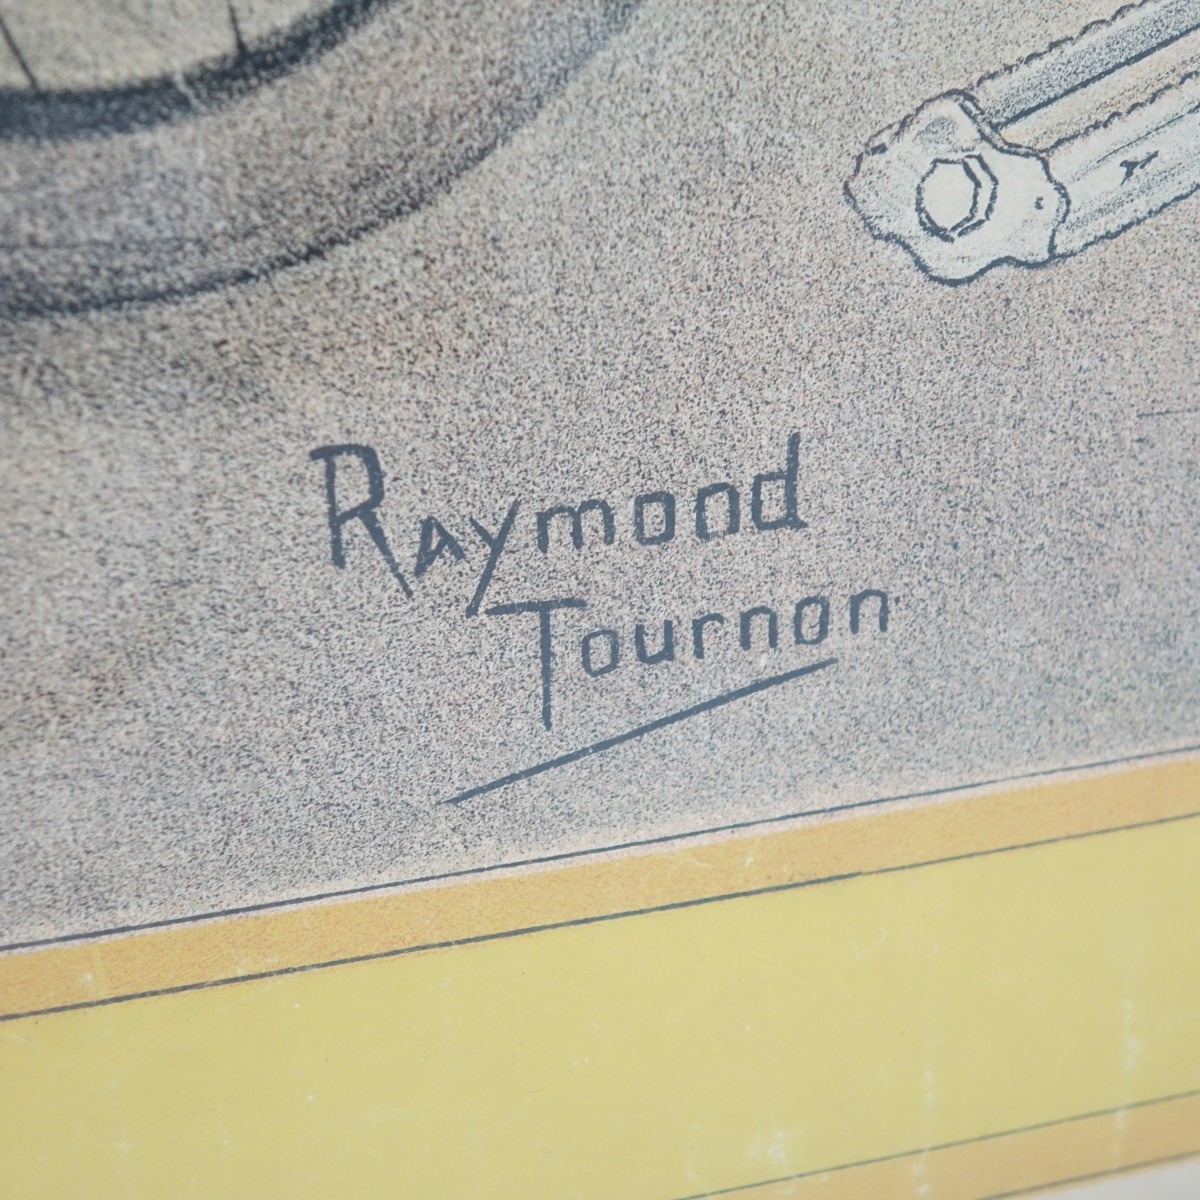 Raymond Tournon (1870-1919) Cycles Poster